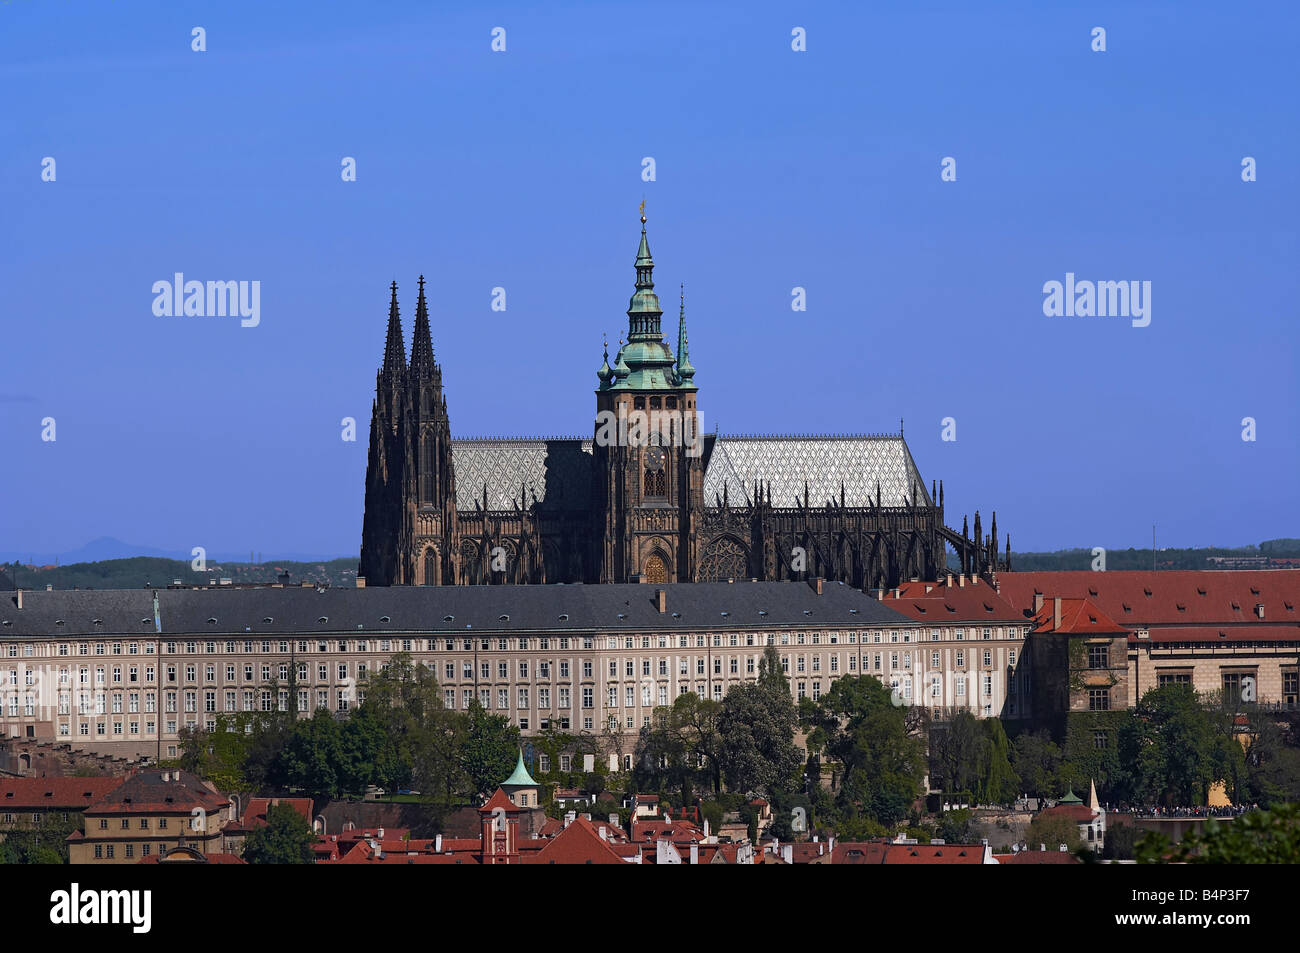 Hradcany - Cattedrale di San Vito nel castello di Praga - la cattedrale di incoronazione dei sovrani di Boemia. Foto Stock